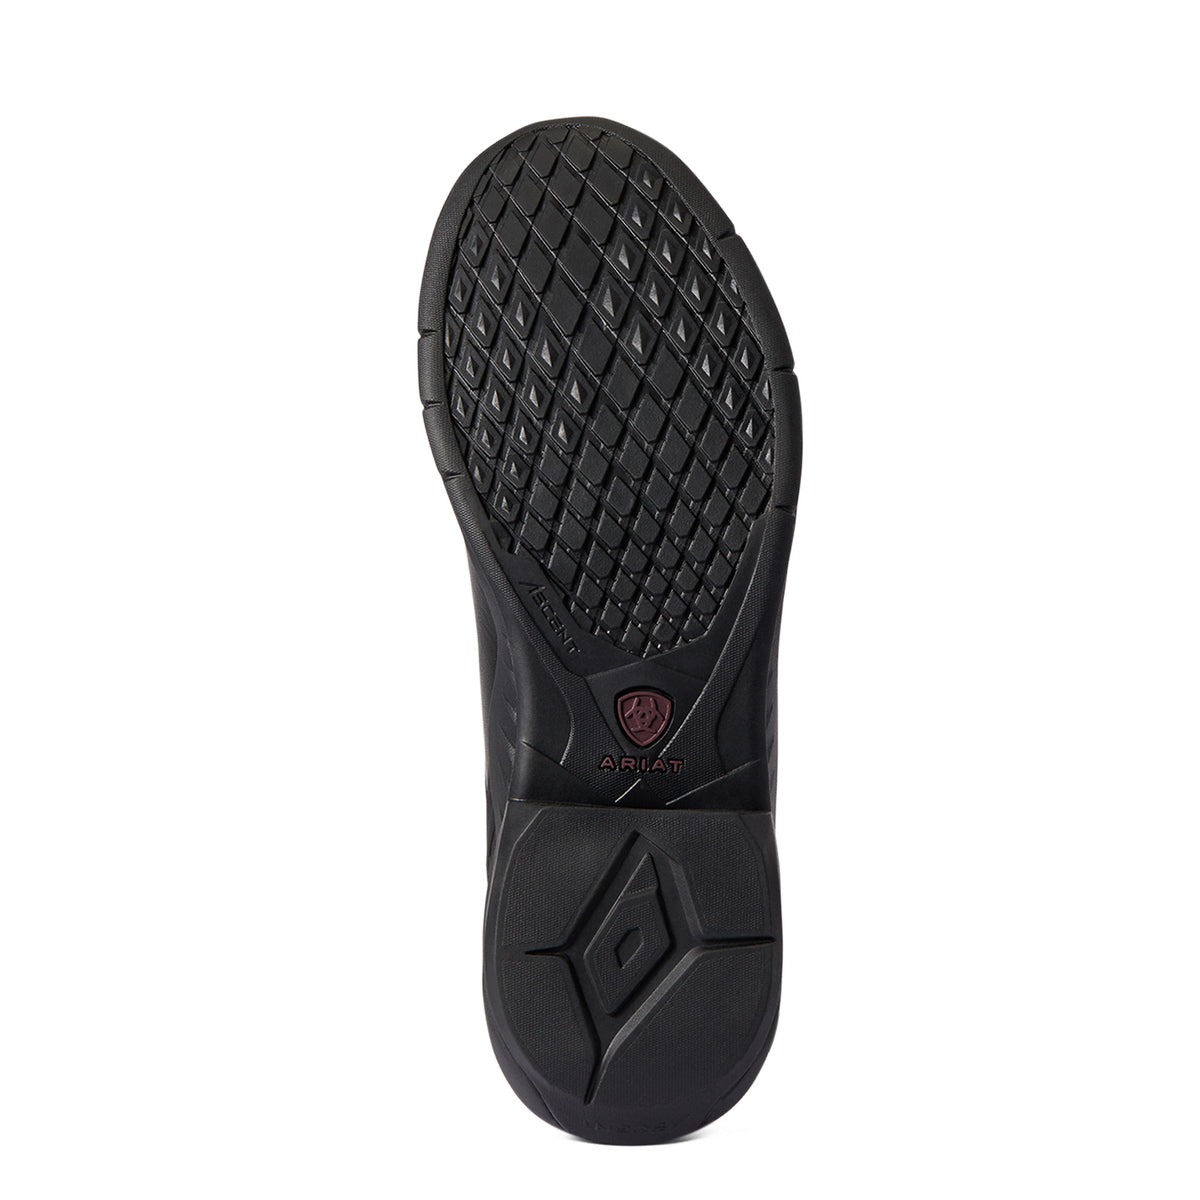 Ariat Women's Ascent Waterproof Paddock Boot